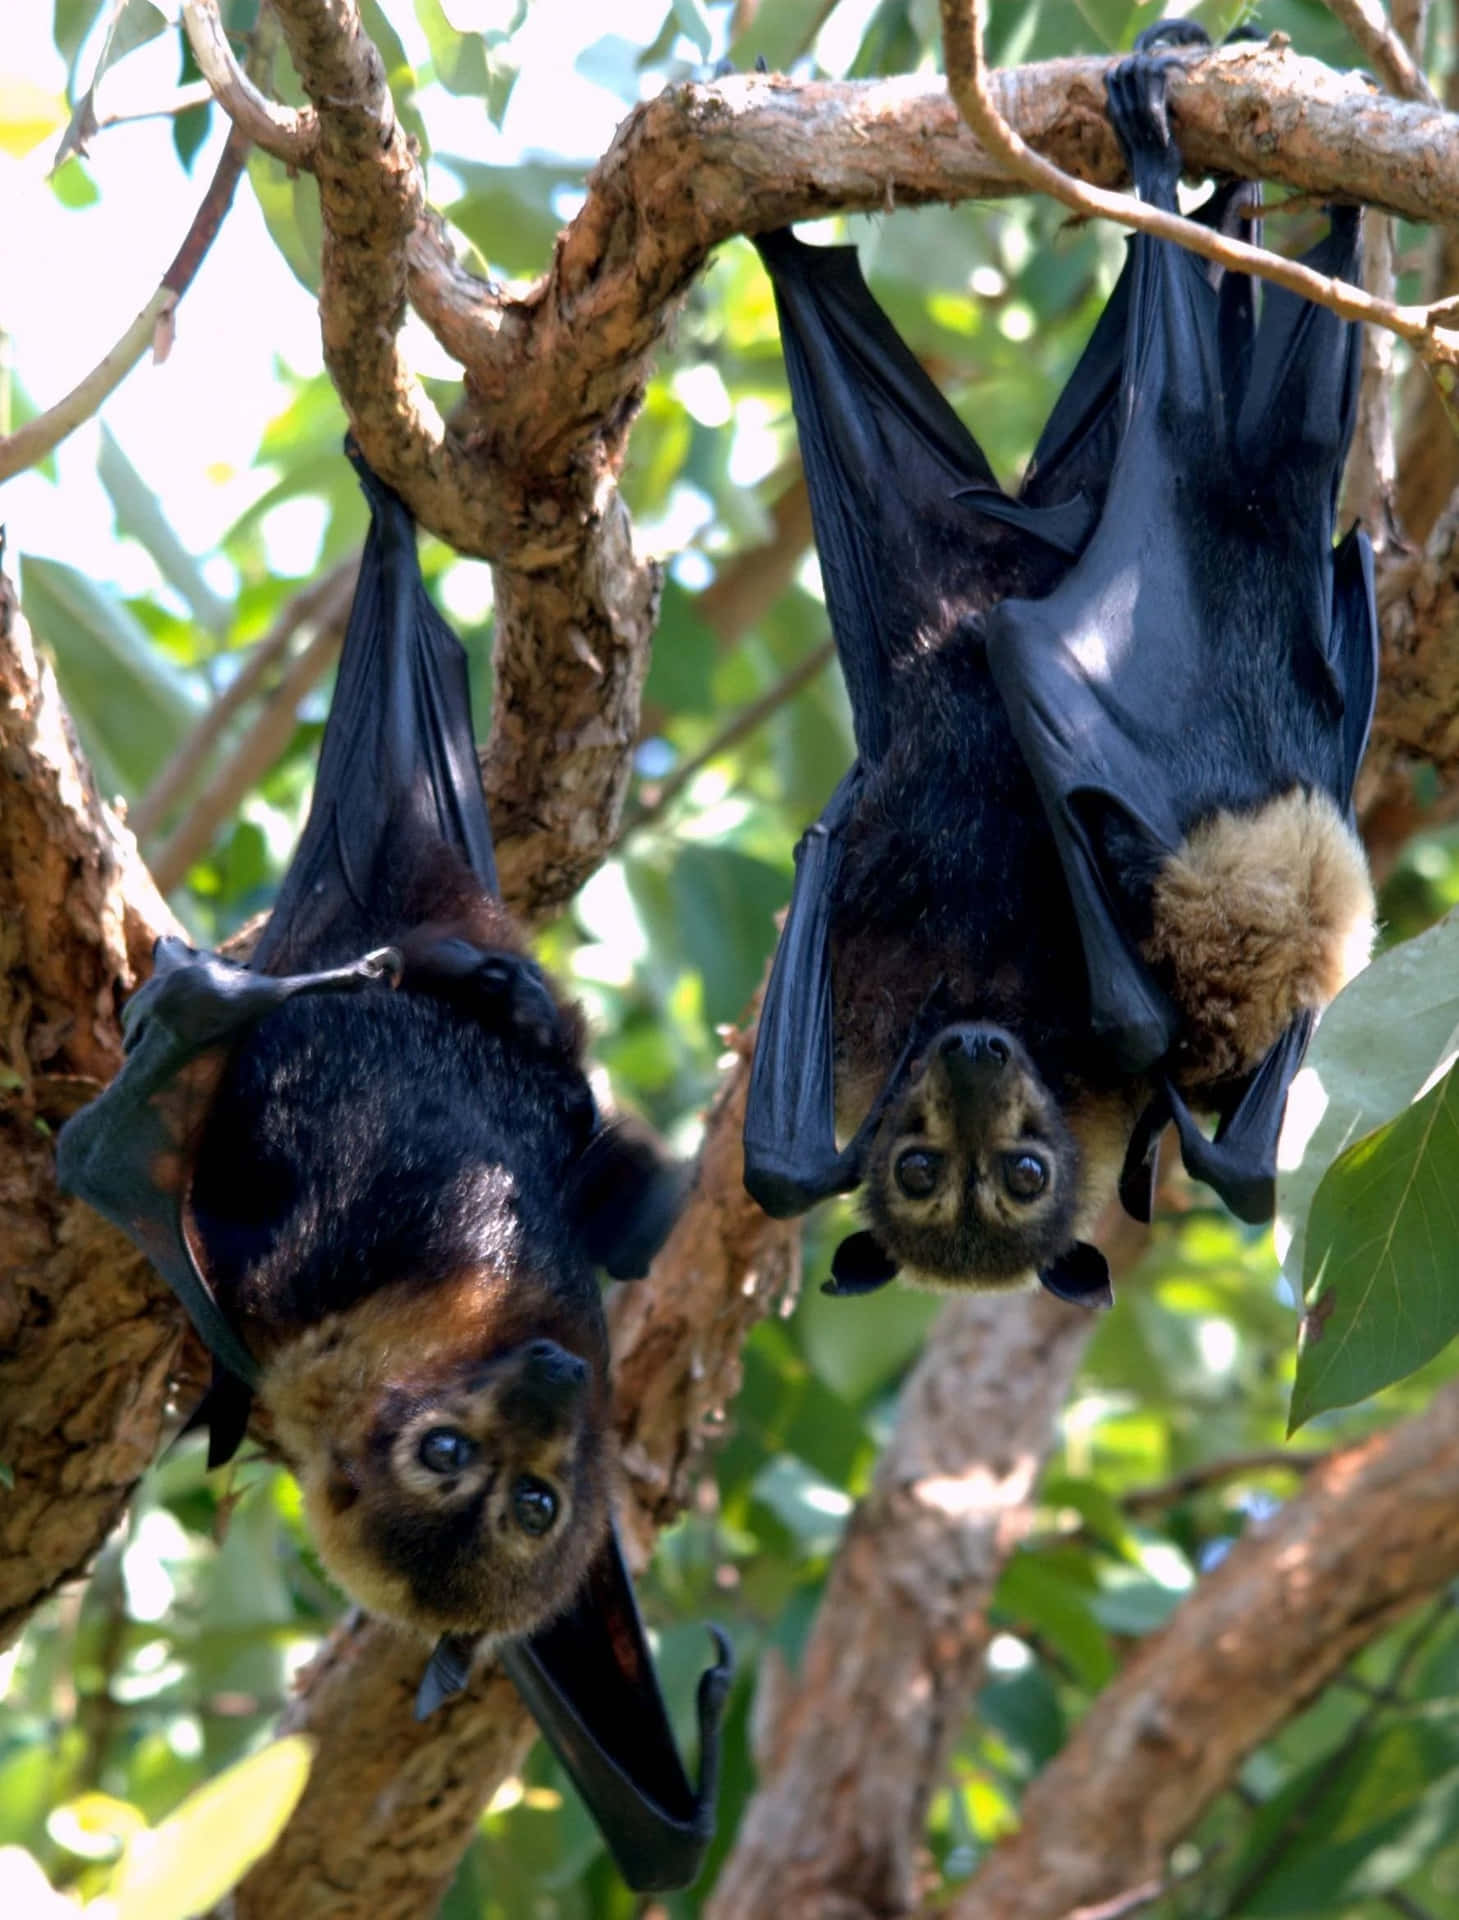 Stupefacenteimmagine Ravvicinata Di Pipistrelli Della Frutta Nel Loro Habitat Naturale